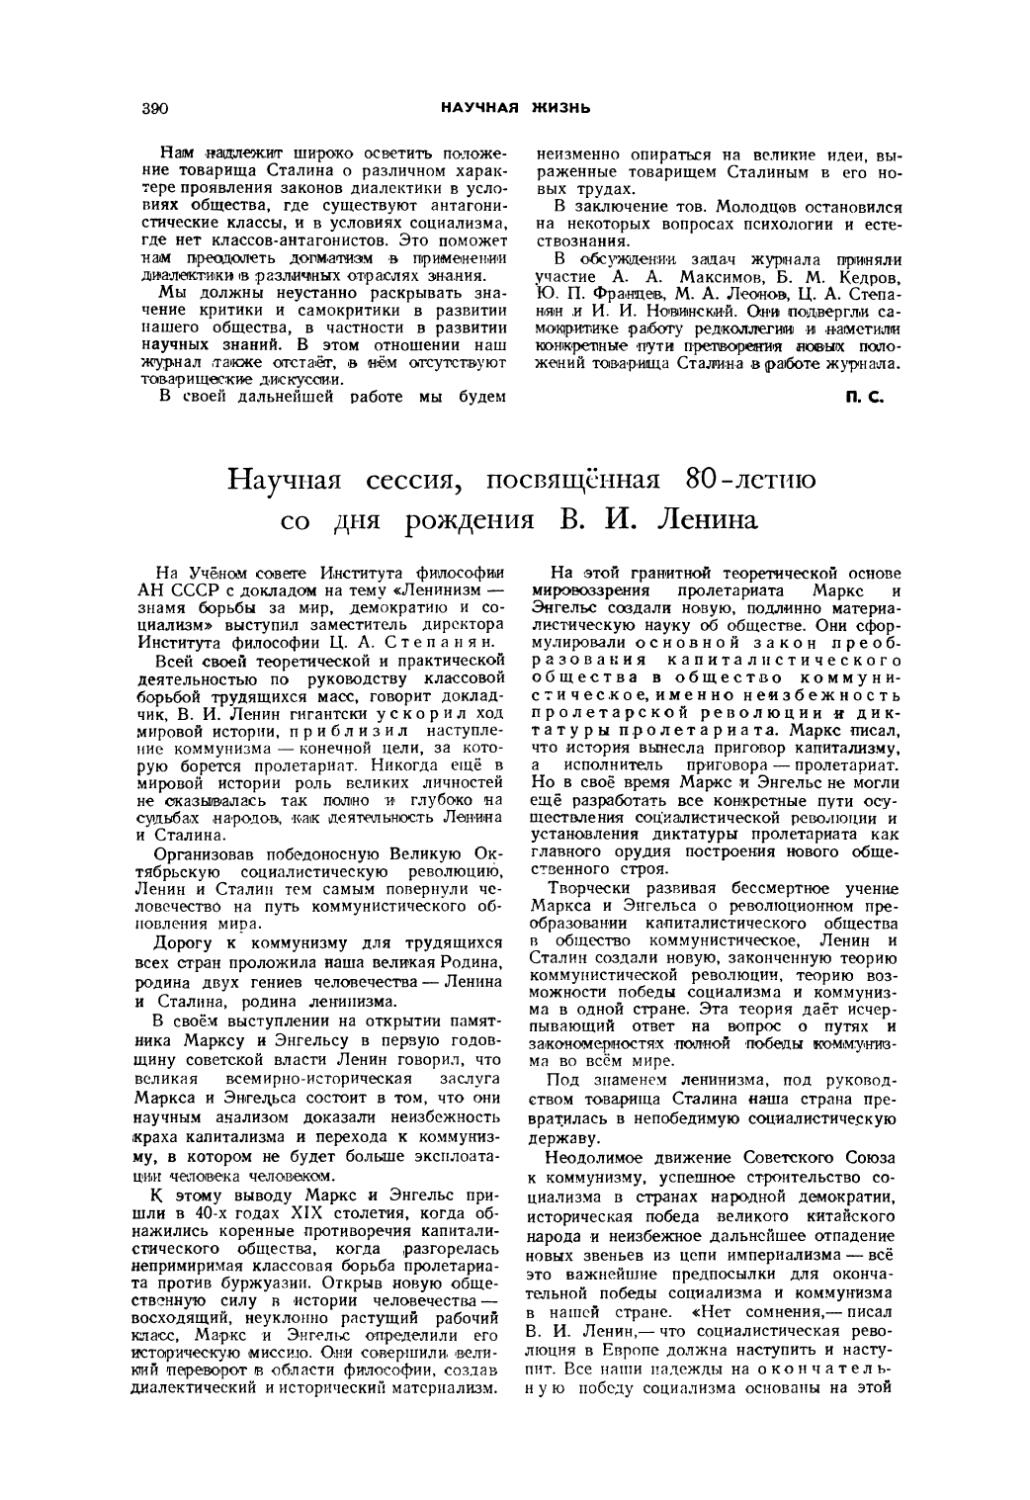 Научная сессия, посвящённая 80-летию со дня рождения В. И. Ленина